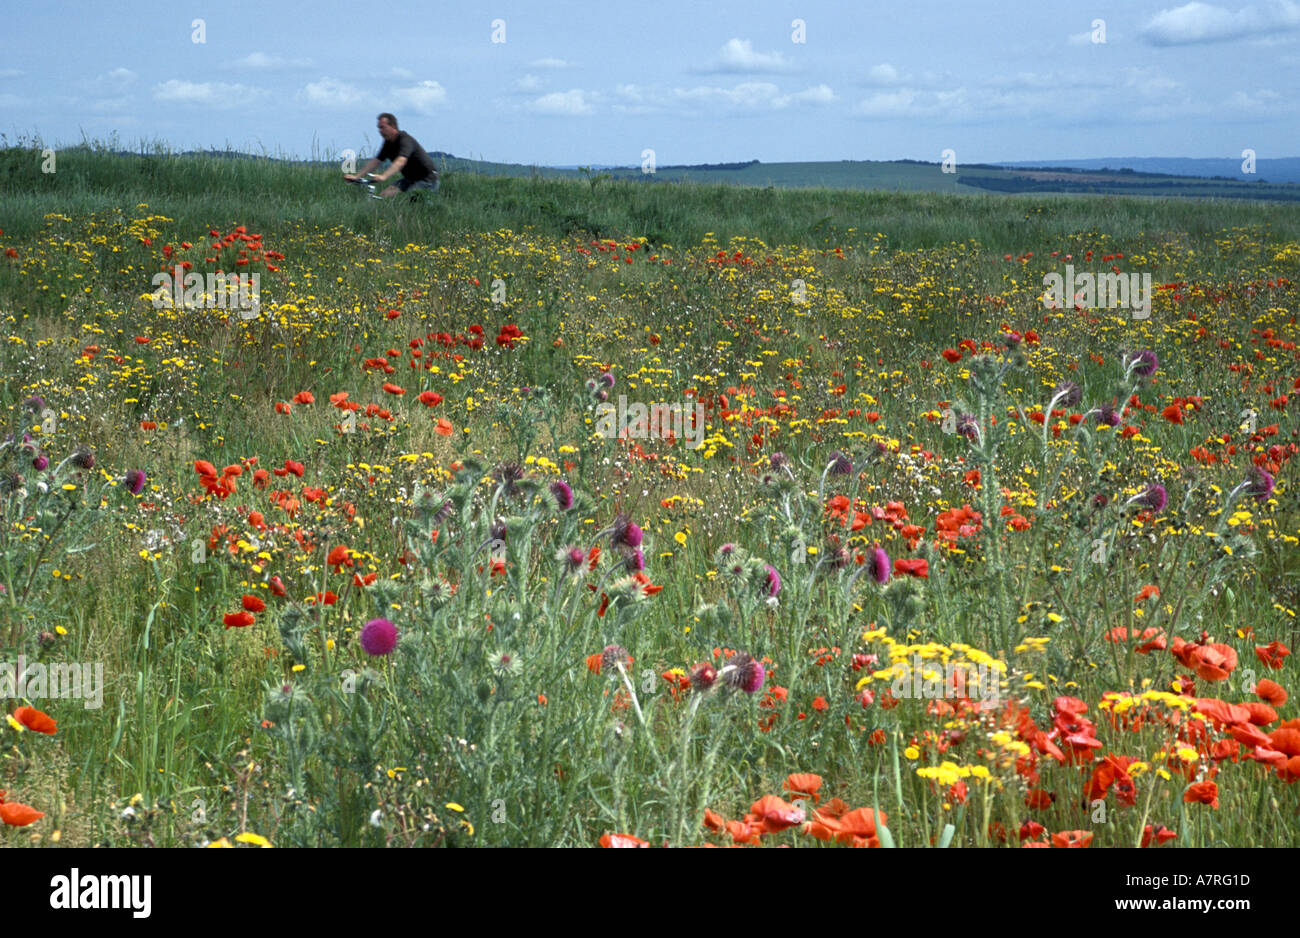 Cycliste passant coquelicots et autres mauvaises herbes agricoles les agriculteurs dans un champ dans l'East Sussex en Angleterre Banque D'Images